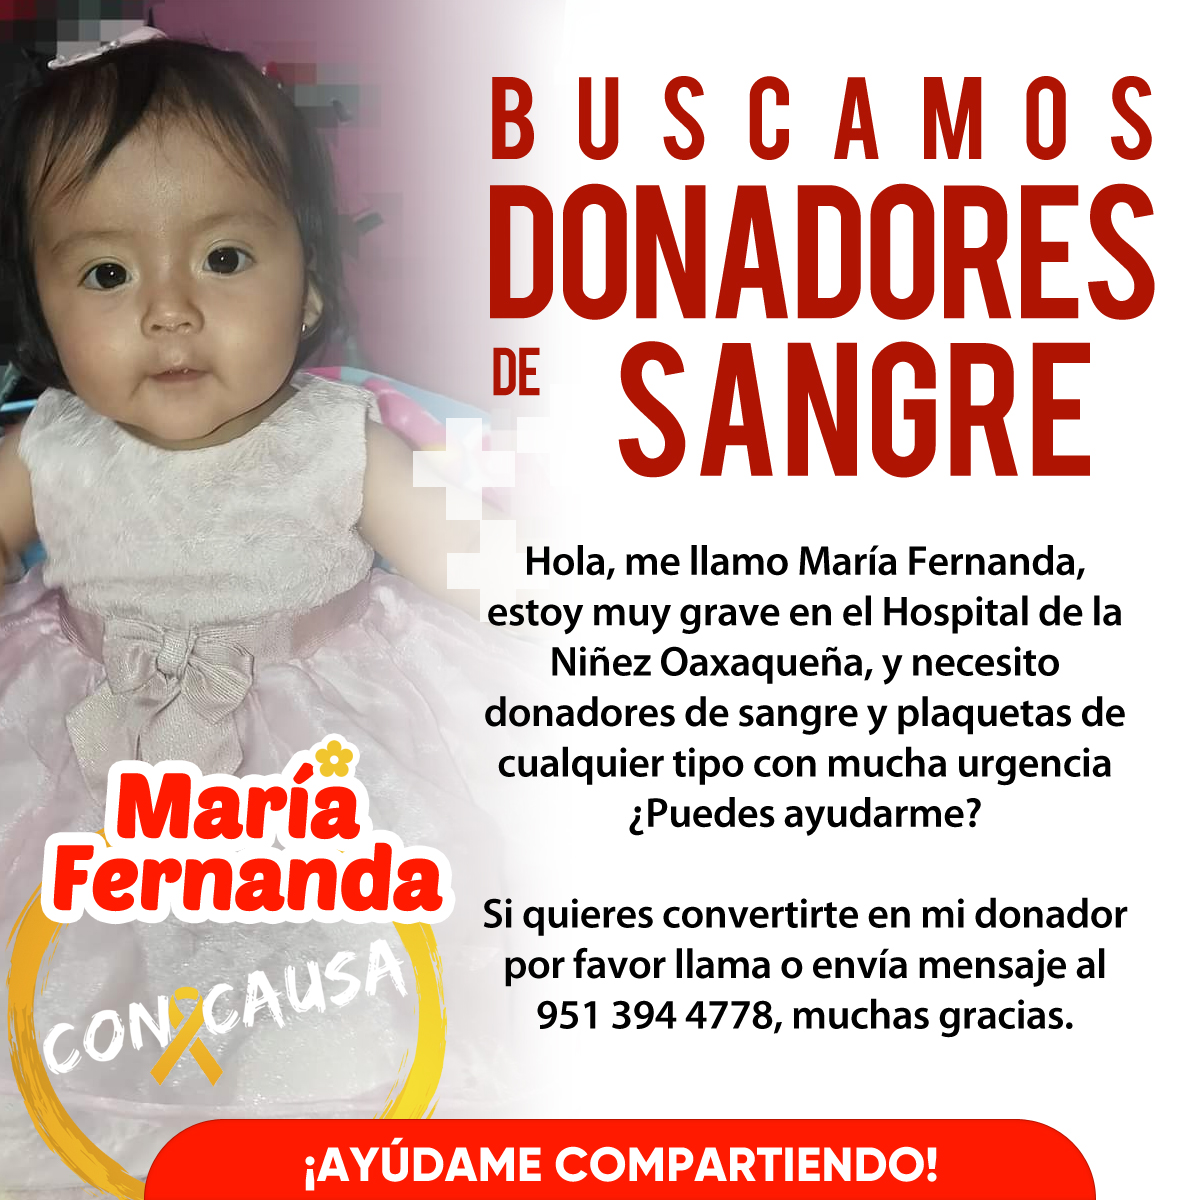 María Fernanda es una bebita, se encuentra muy grave en el Hospital de la Niñez Oaxaqueña y necesita donadores de manera urgente. Ayúdanos compartiendo esta publicación y si puedes también donándole. #DonaSangre #Oaxaca #ConCausa #FelizMiércoles #Urgente